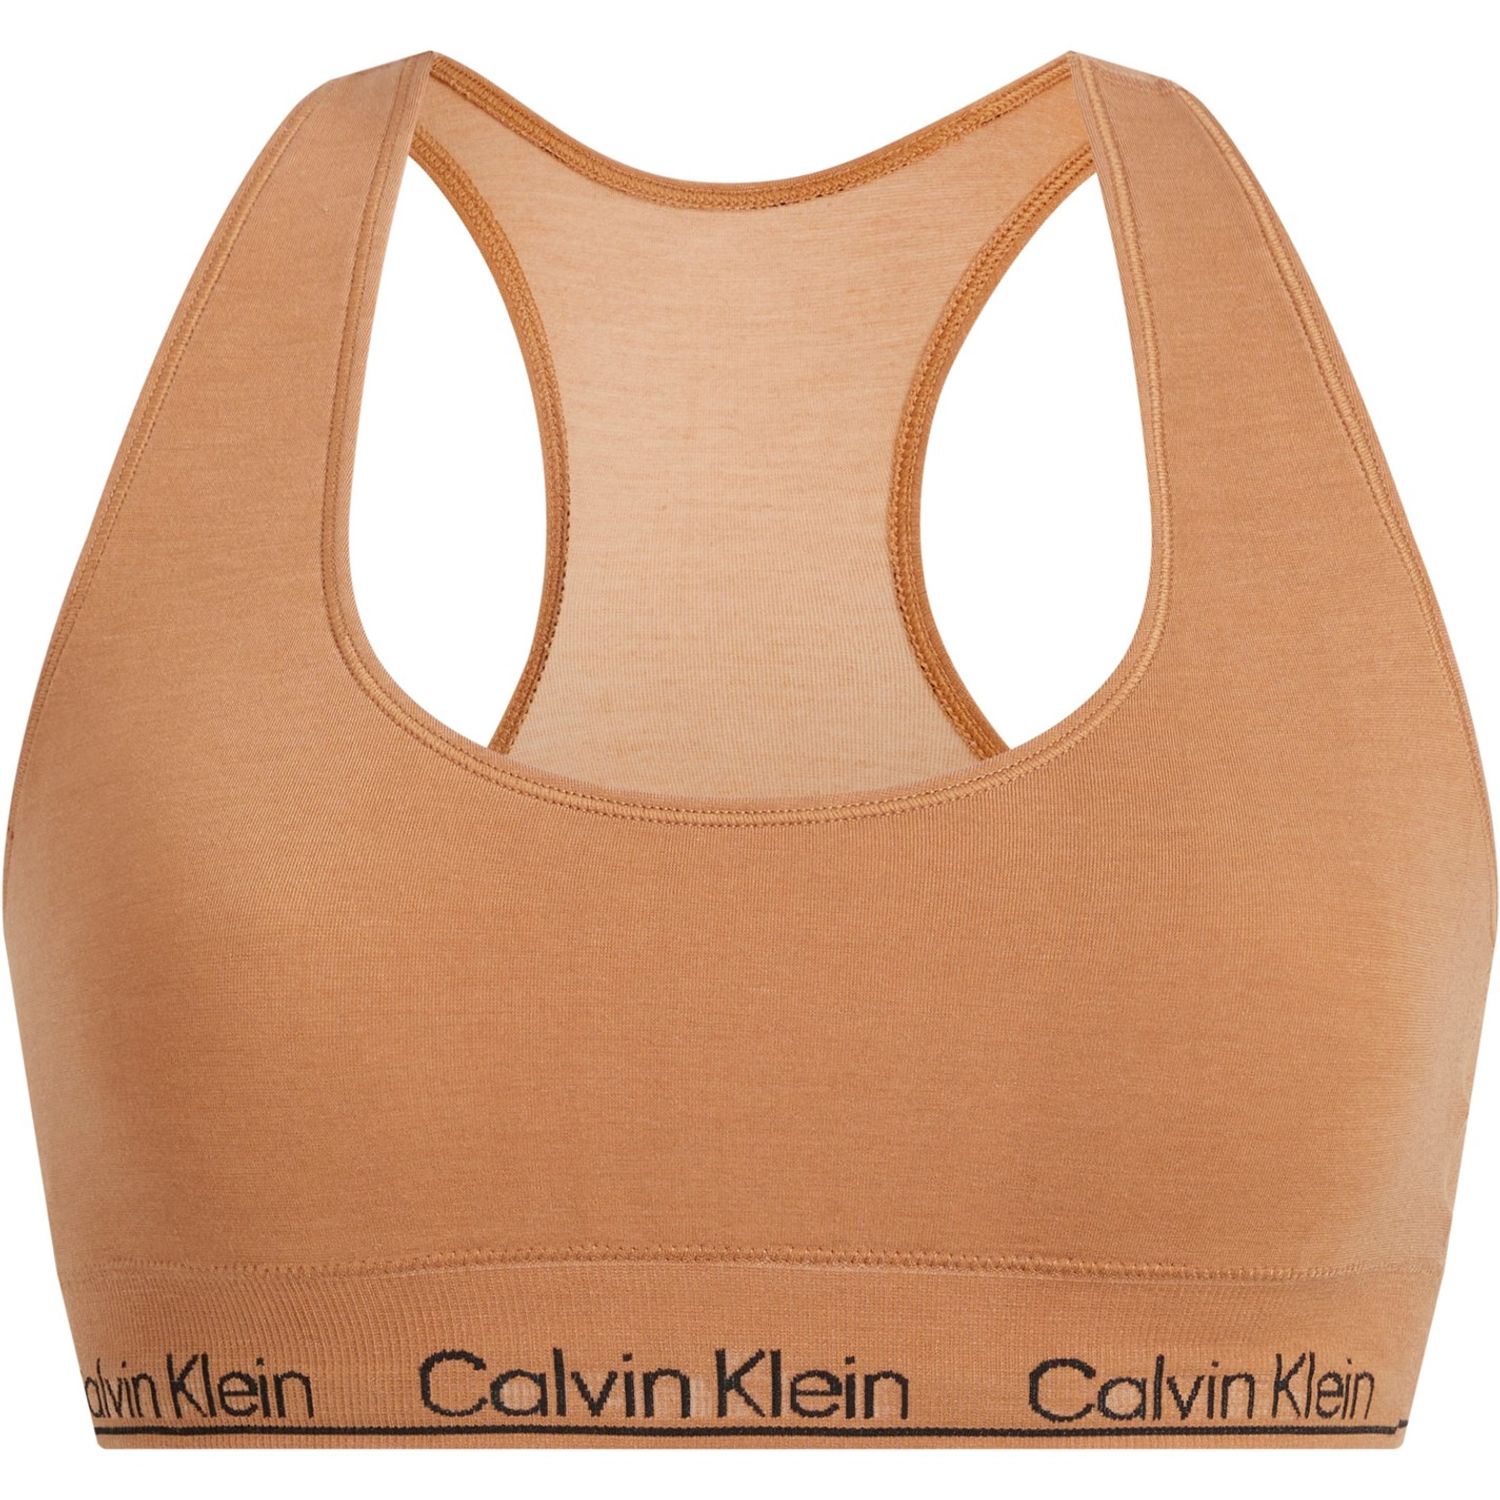 Calvin Klein Modern Seamless bralette in brown